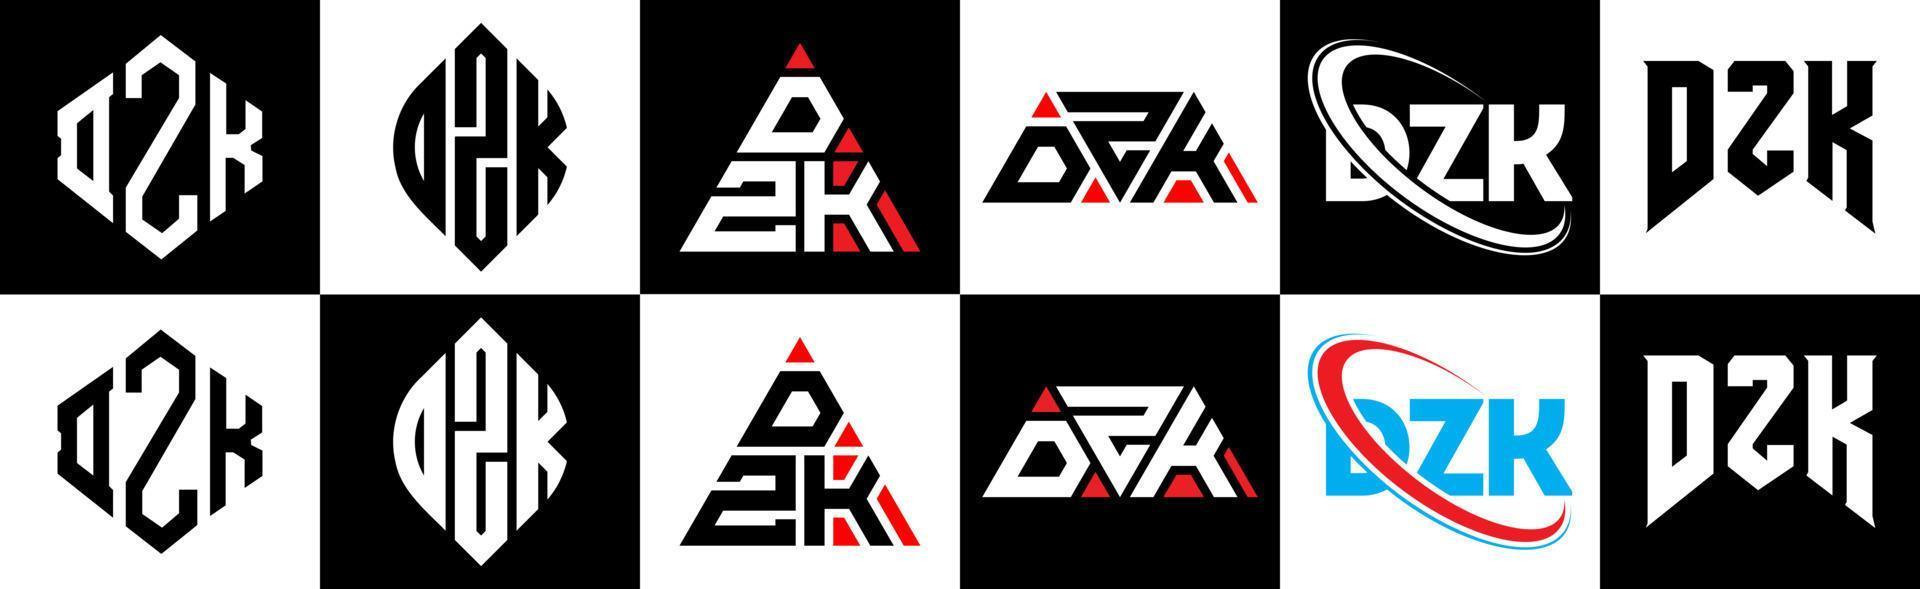 création de logo de lettre dzk en six styles. polygone dzk, cercle, triangle, hexagone, style plat et simple avec logo de lettre de variation de couleur noir et blanc dans un plan de travail. dzk logo minimaliste et classique vecteur